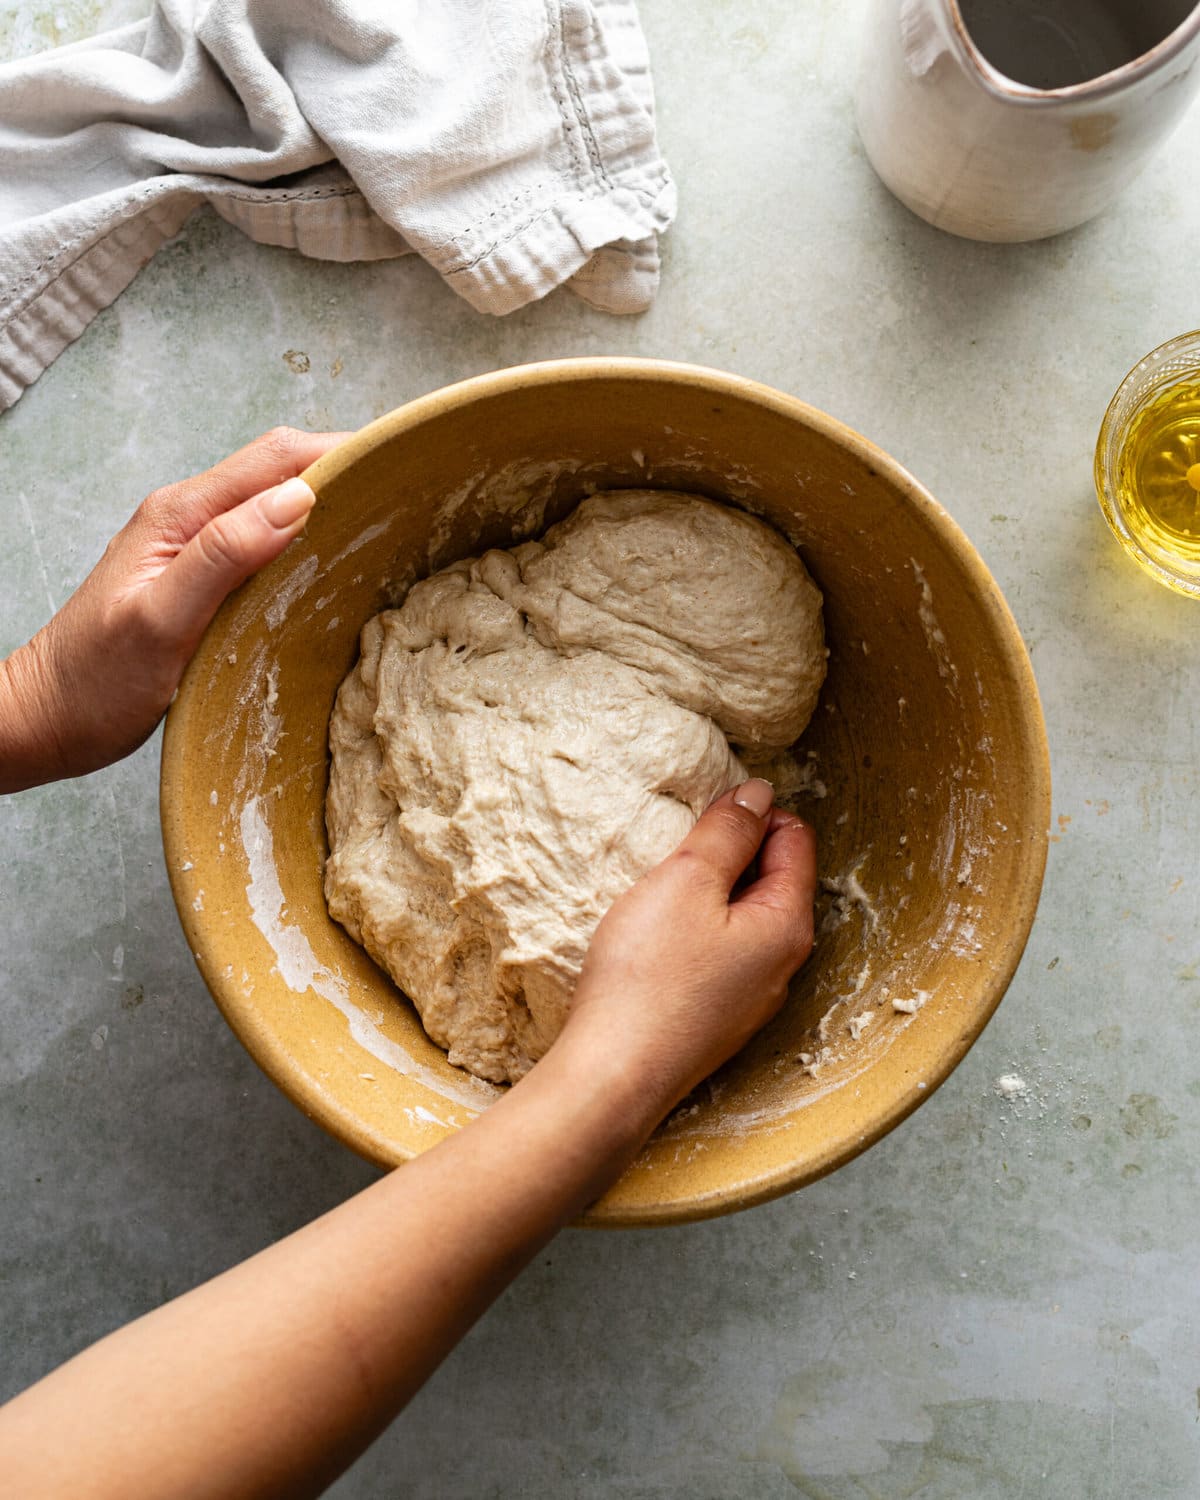 Hands kneading dough inside a bowl.